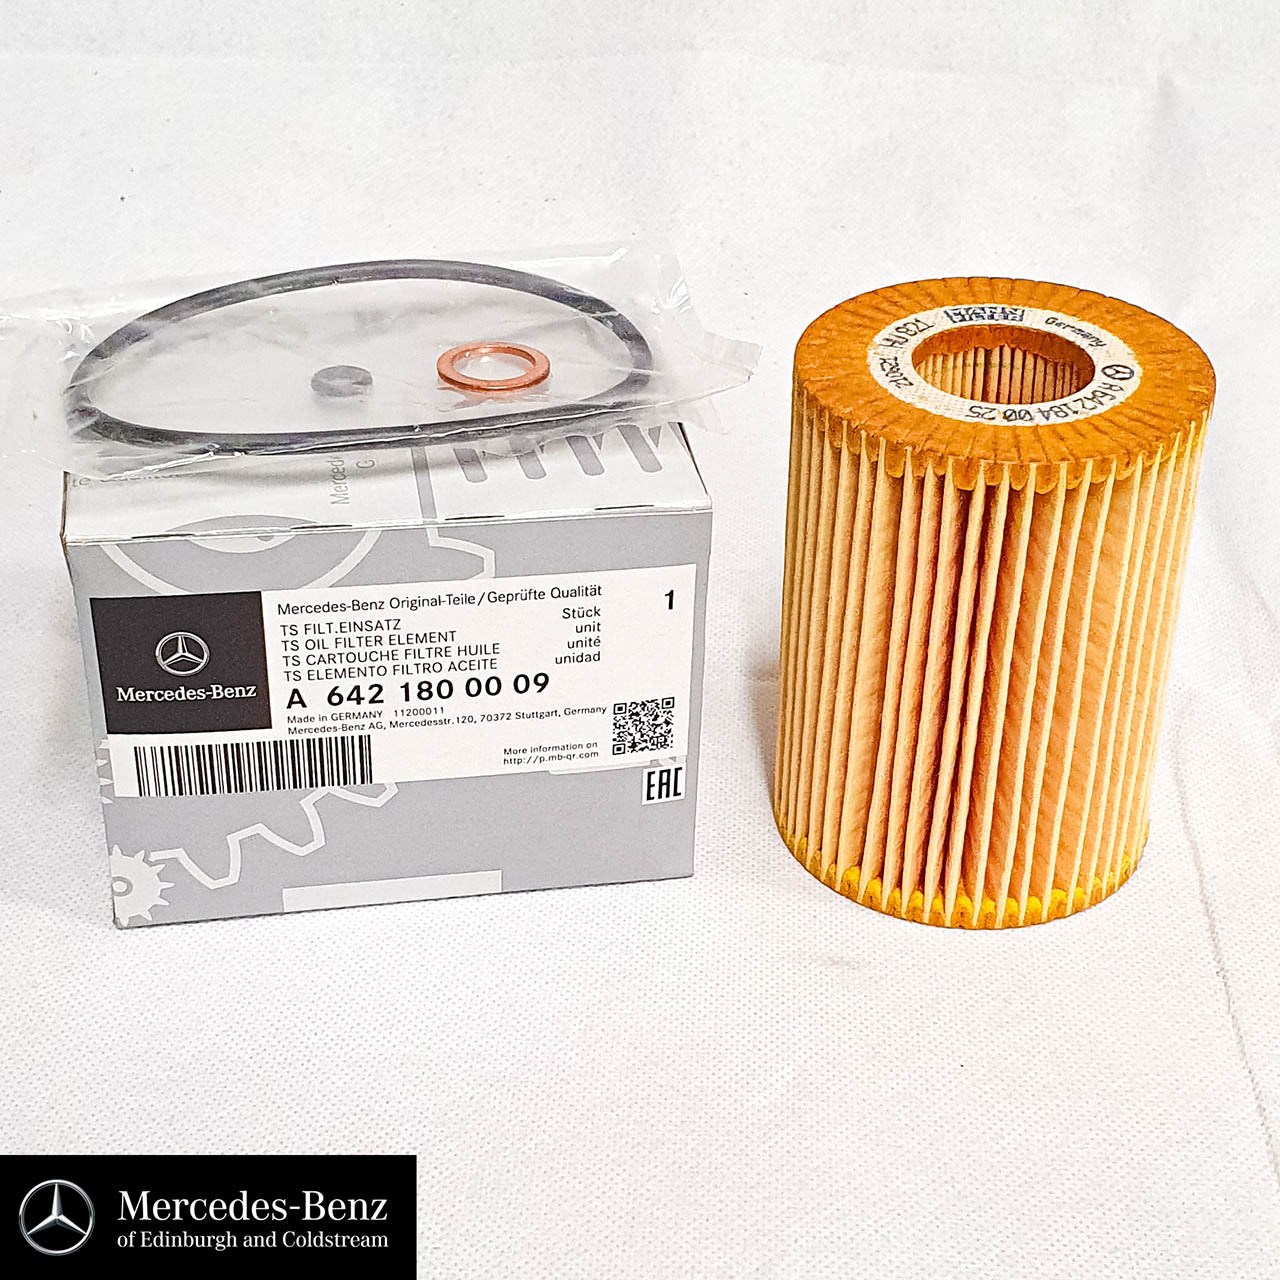 Genuine Mercedes-Benz diesel V6 OM642 engine oil, oil filter, sump plug washer - service kit